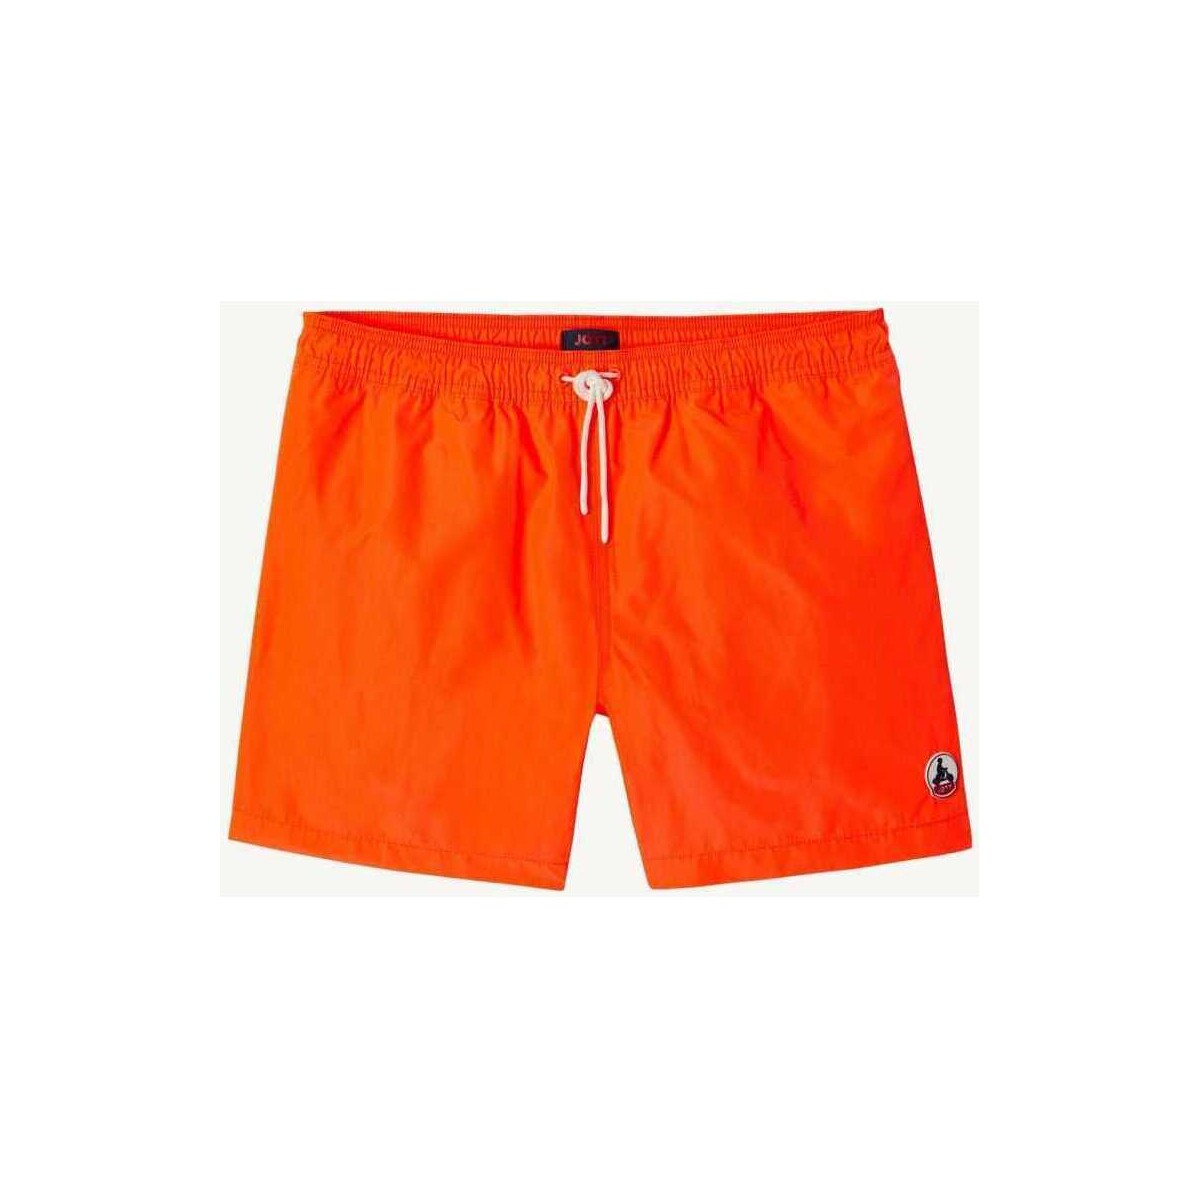 Textiel Heren Zwembroeken/ Zwemshorts JOTT Biarritz fluo Orange